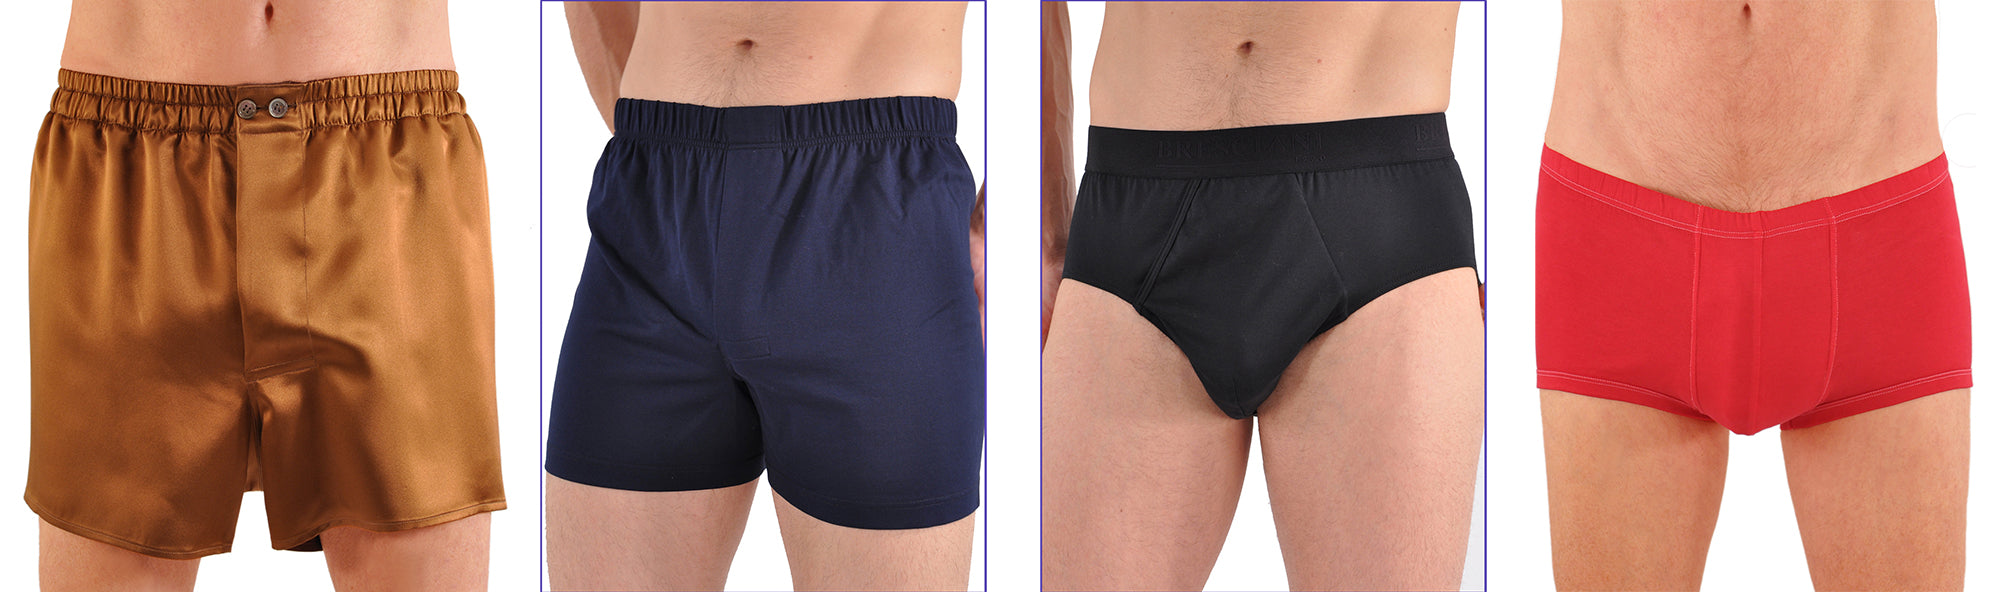 Custom Underwear: Design Men's Underwear & Nightwear